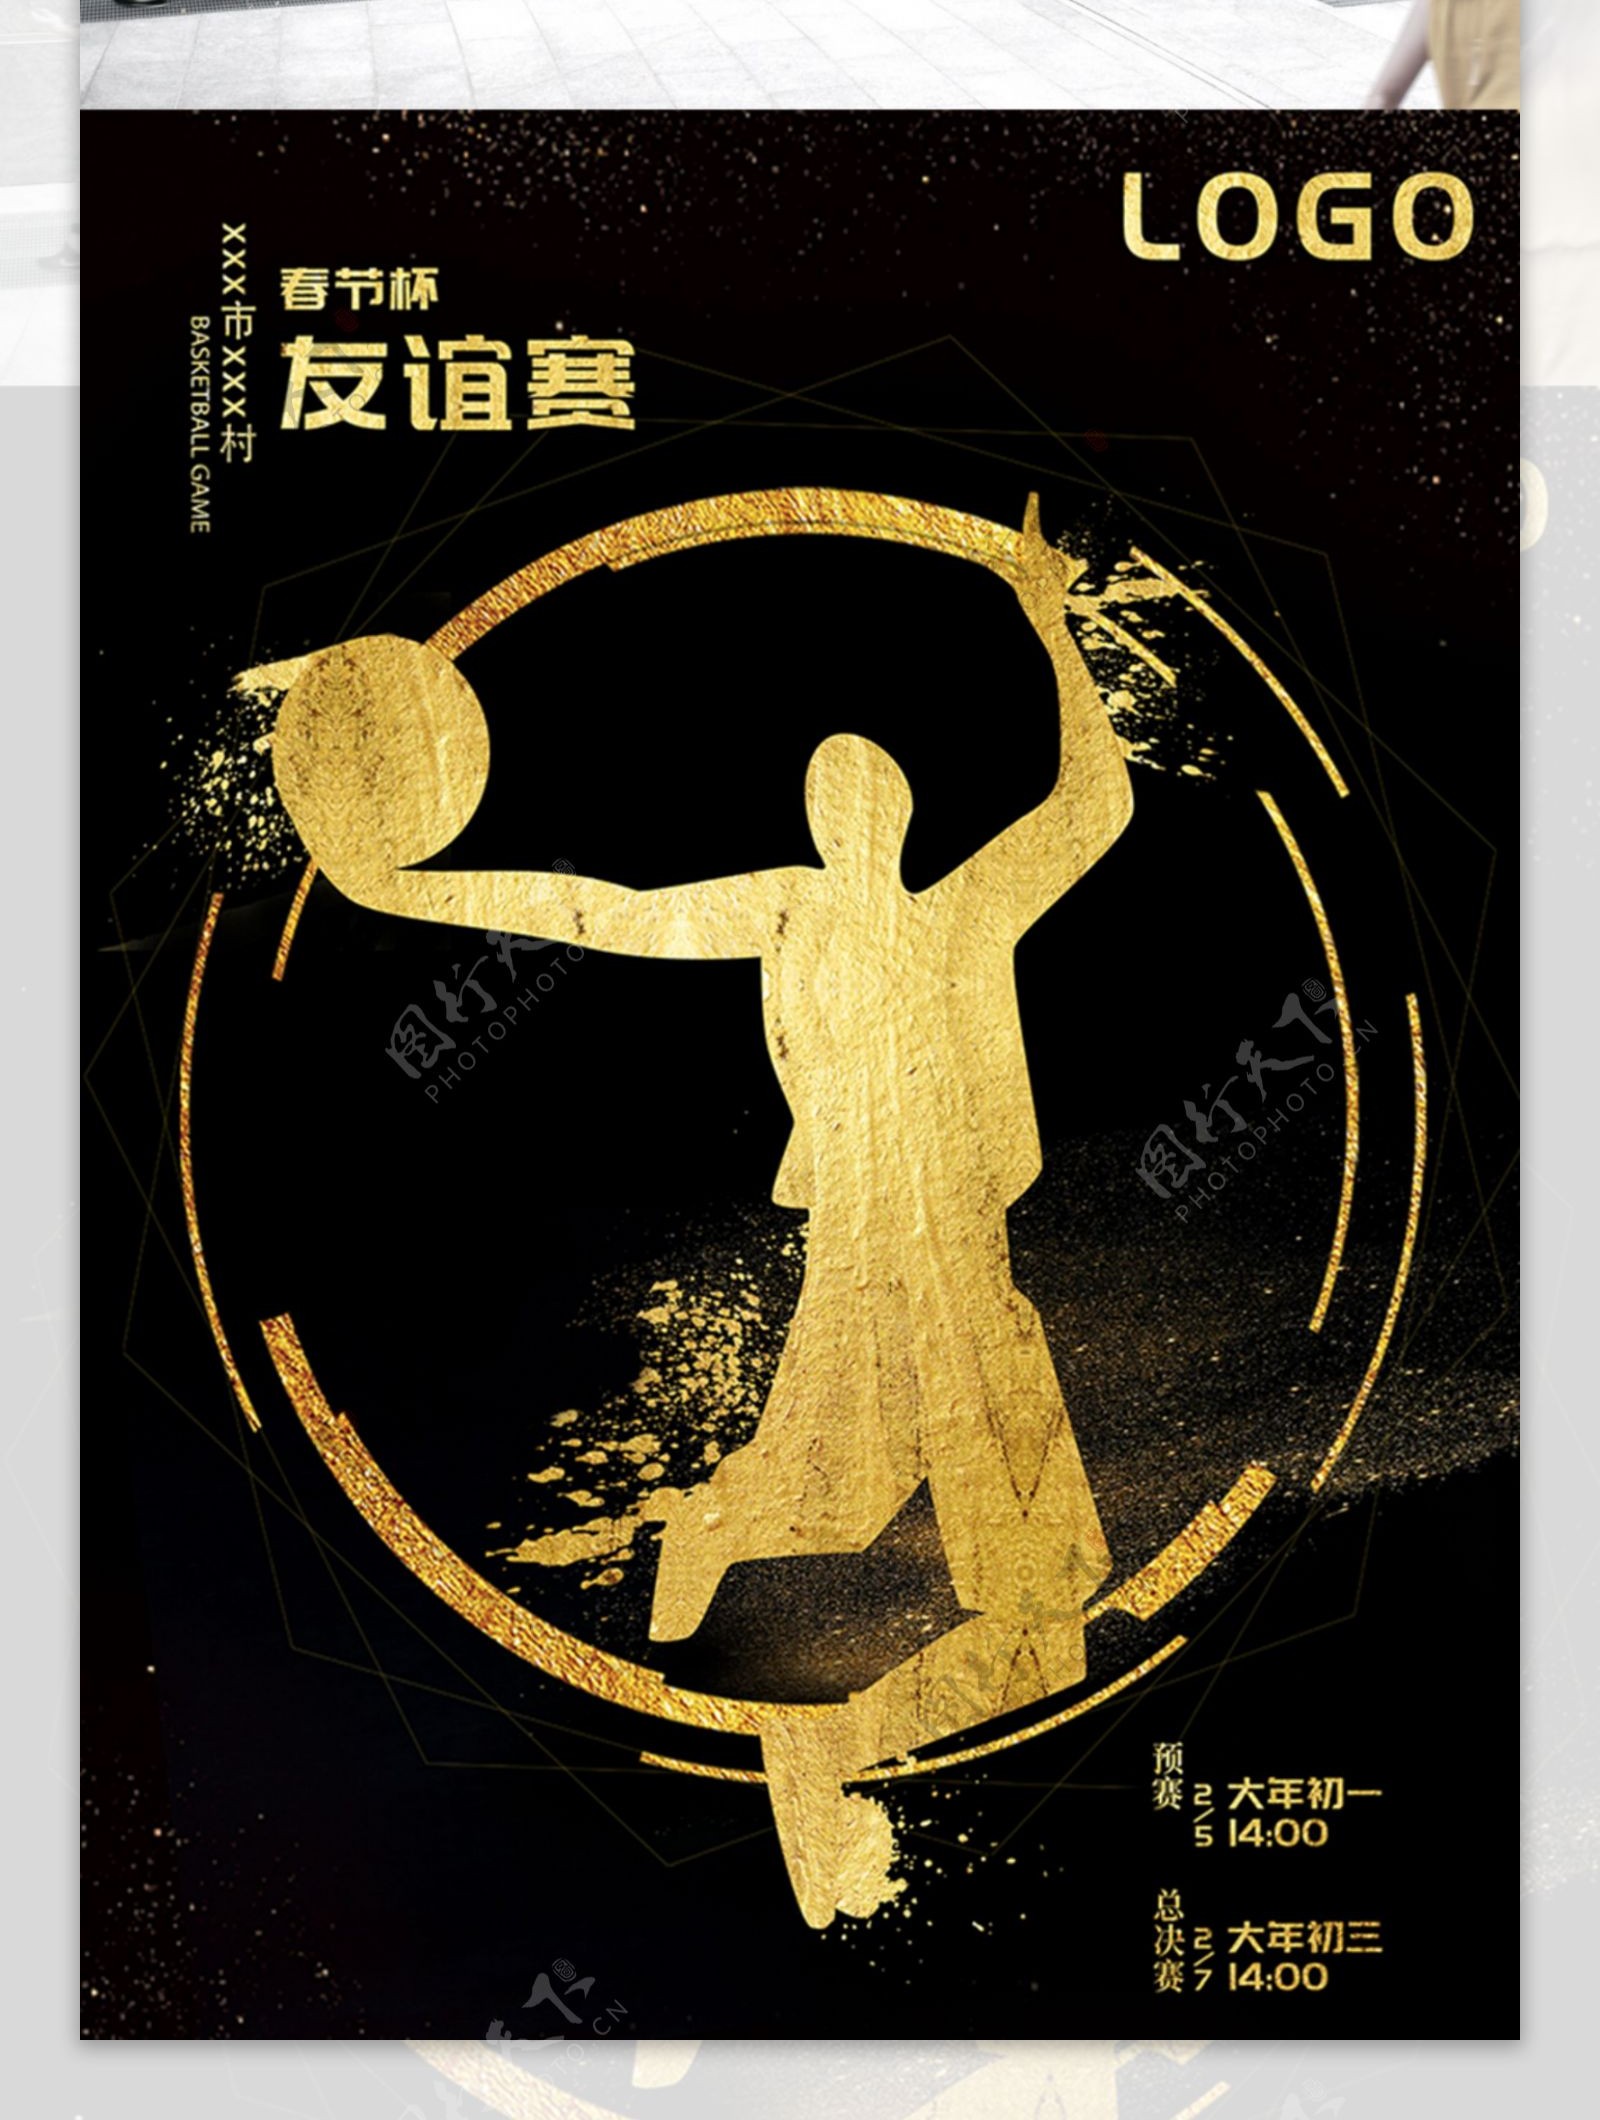 黑暗风金砂篮球比赛海报